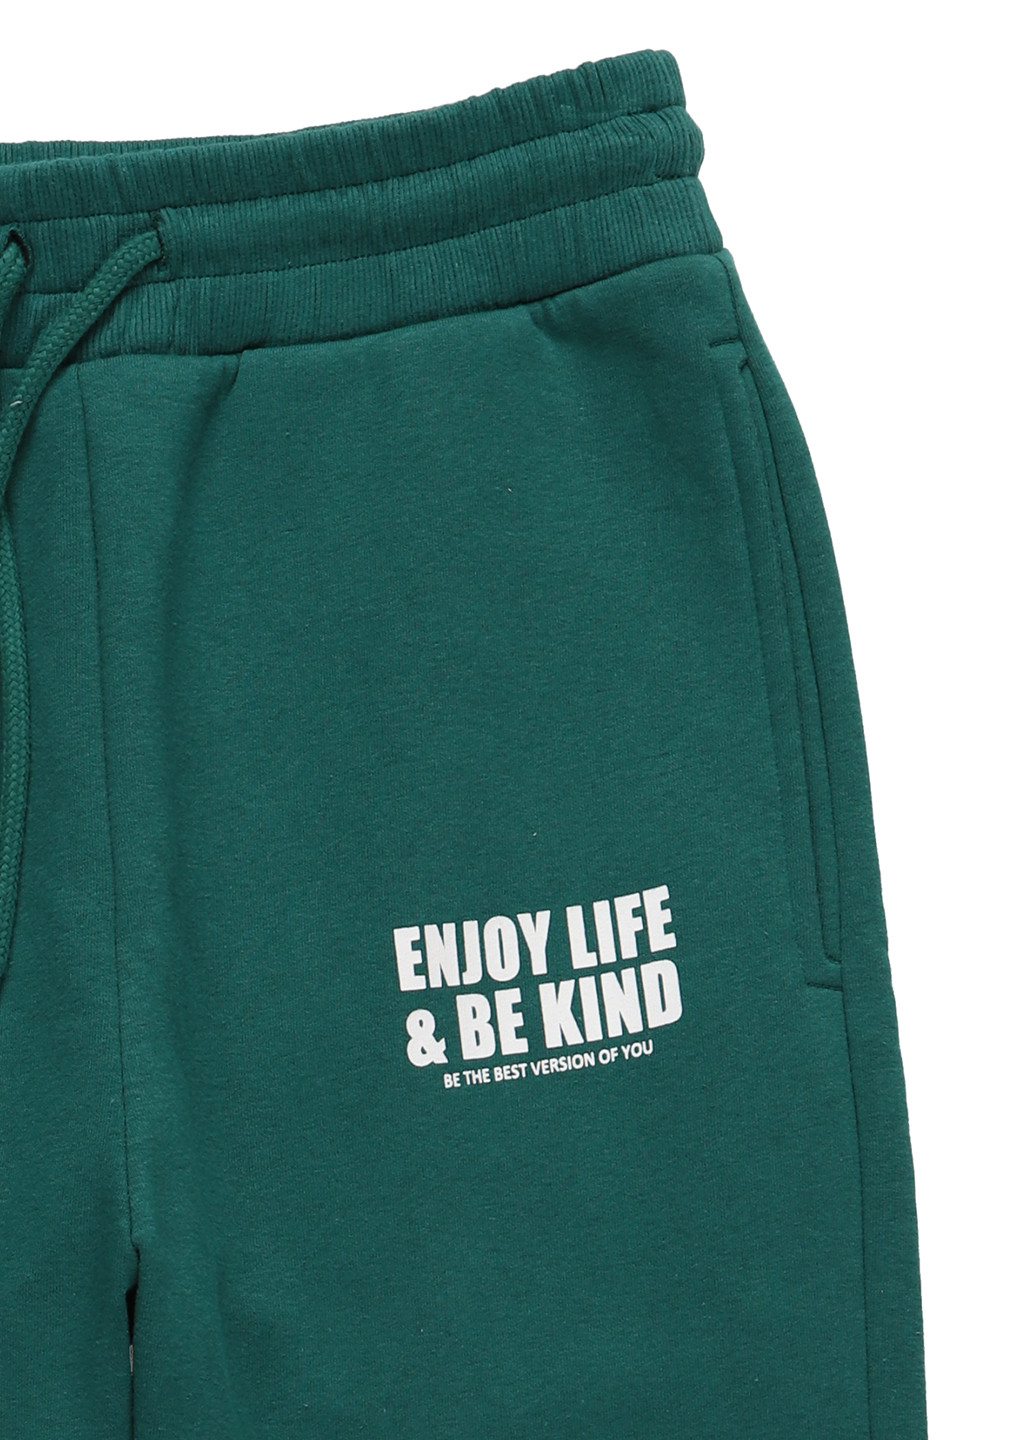 Зеленые спортивные демисезонные джоггеры брюки C&A